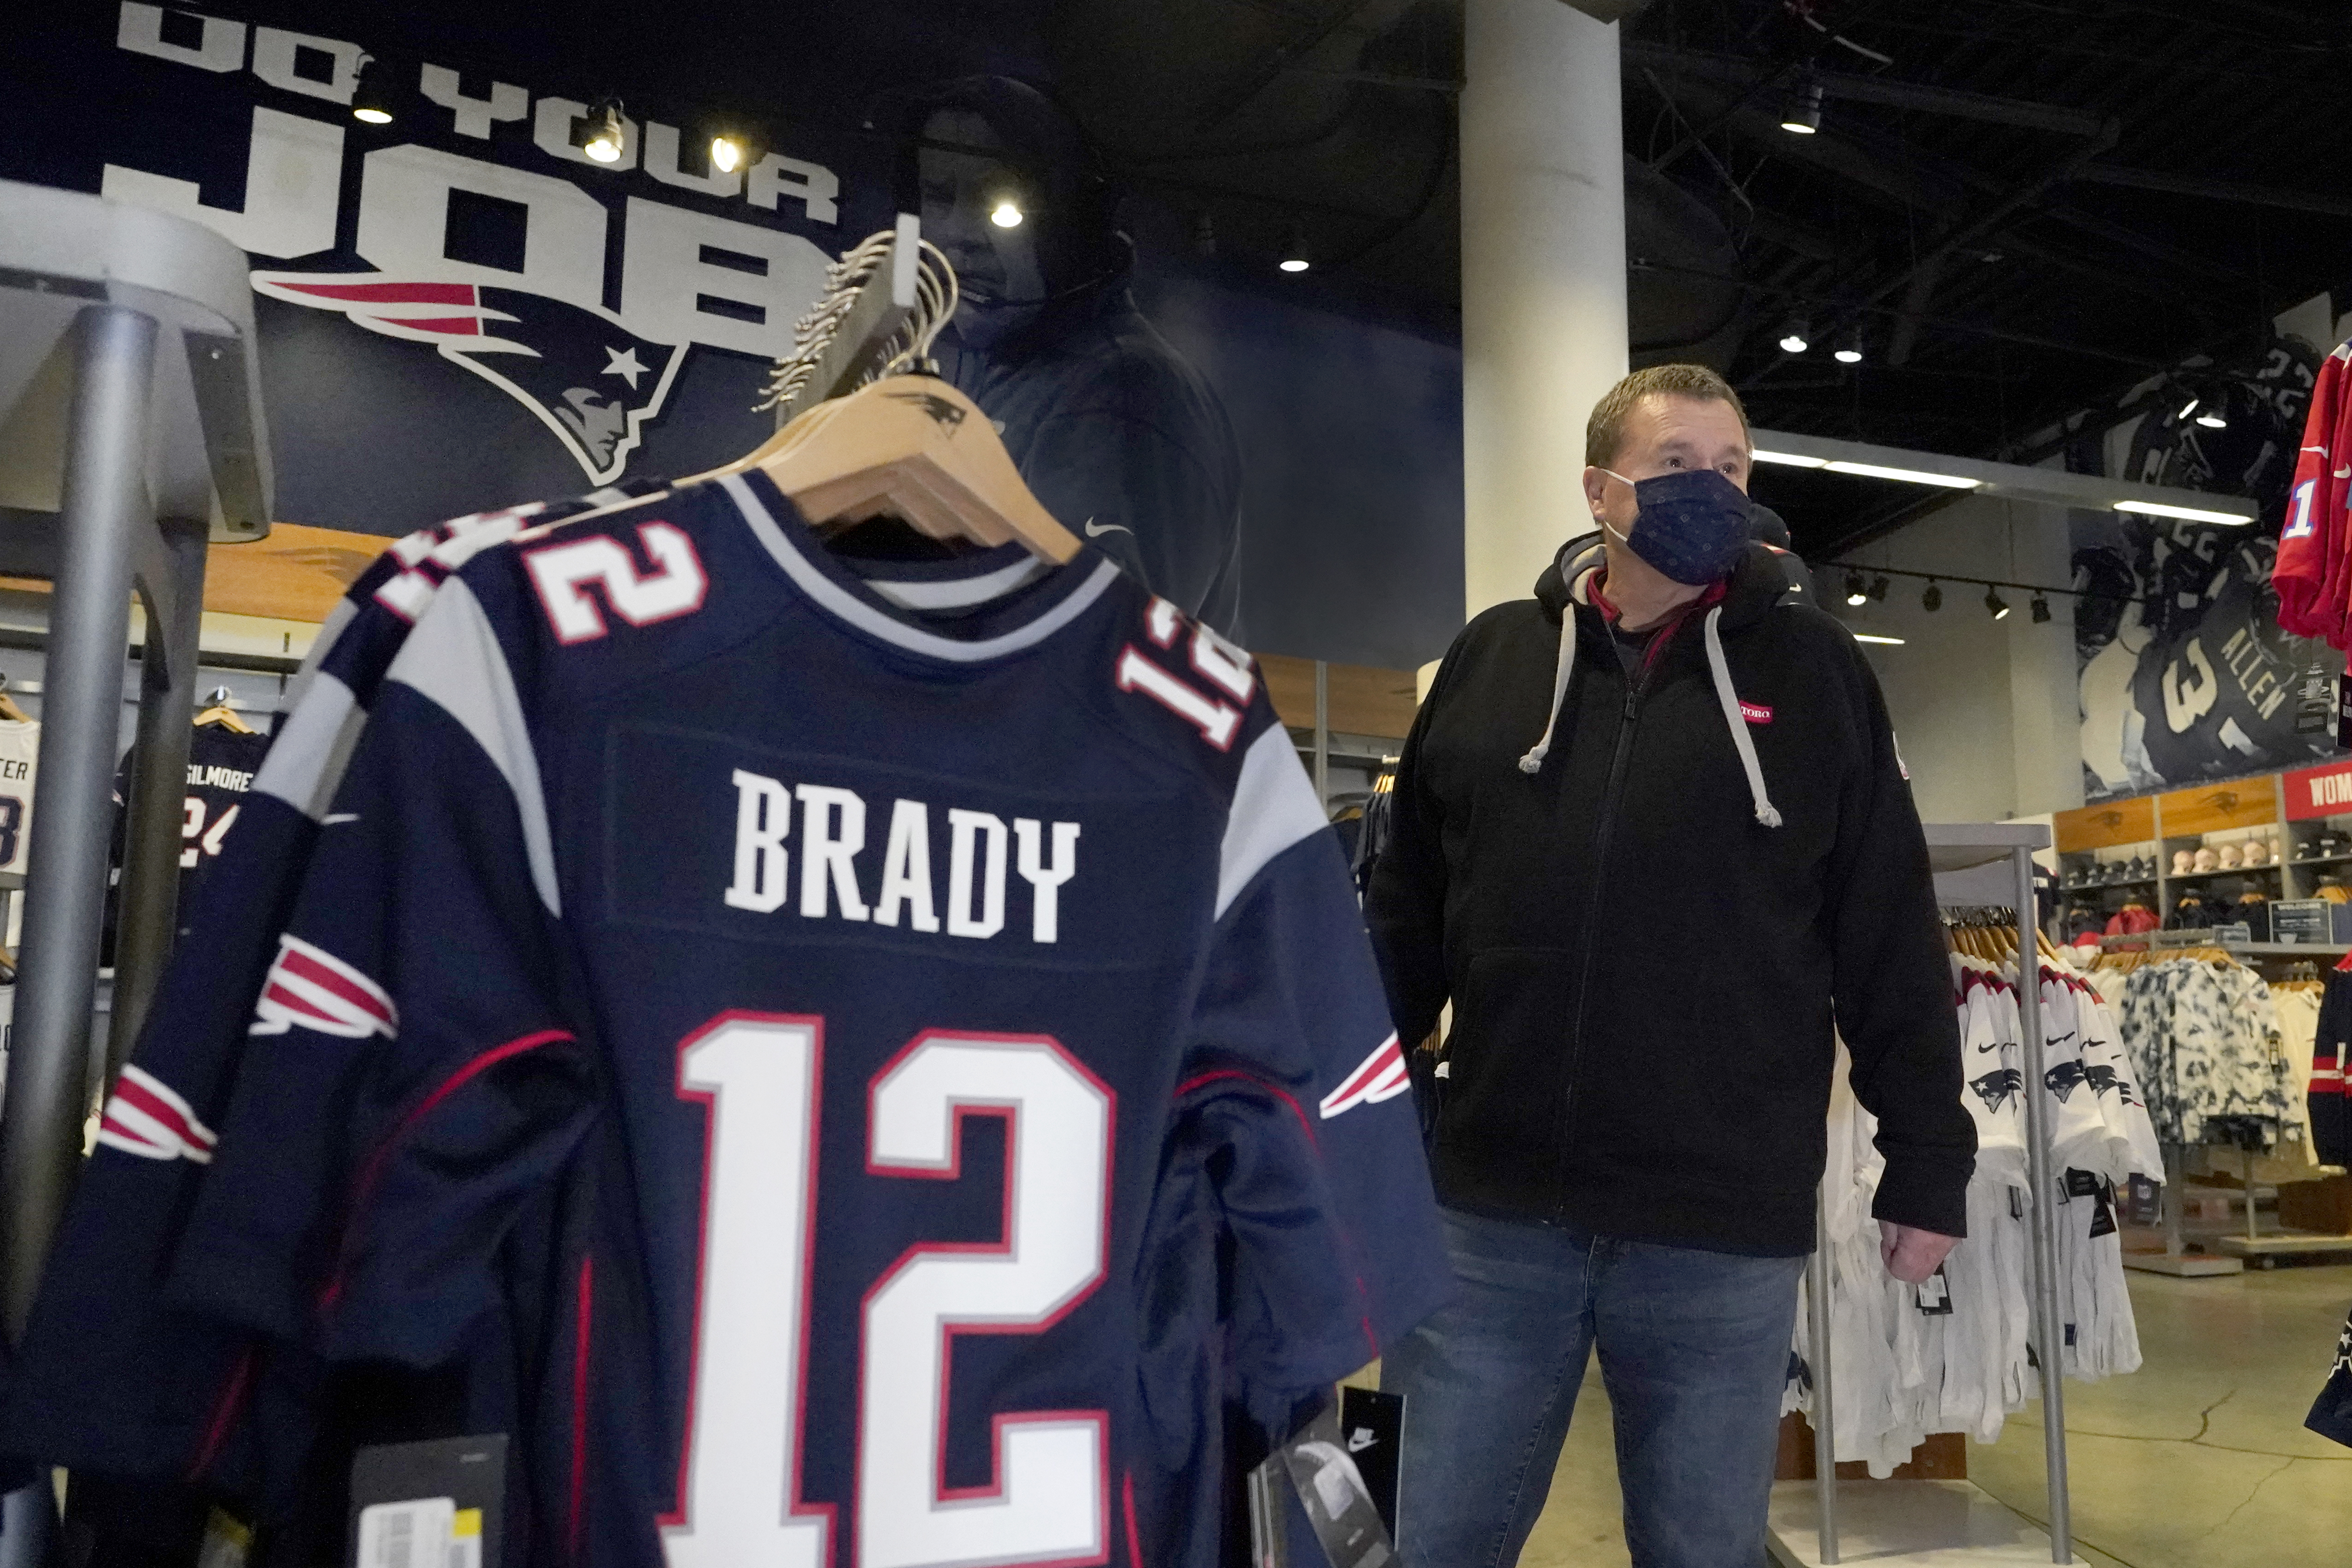 No Hard Feelings': Patriots fans still rooting for Brady